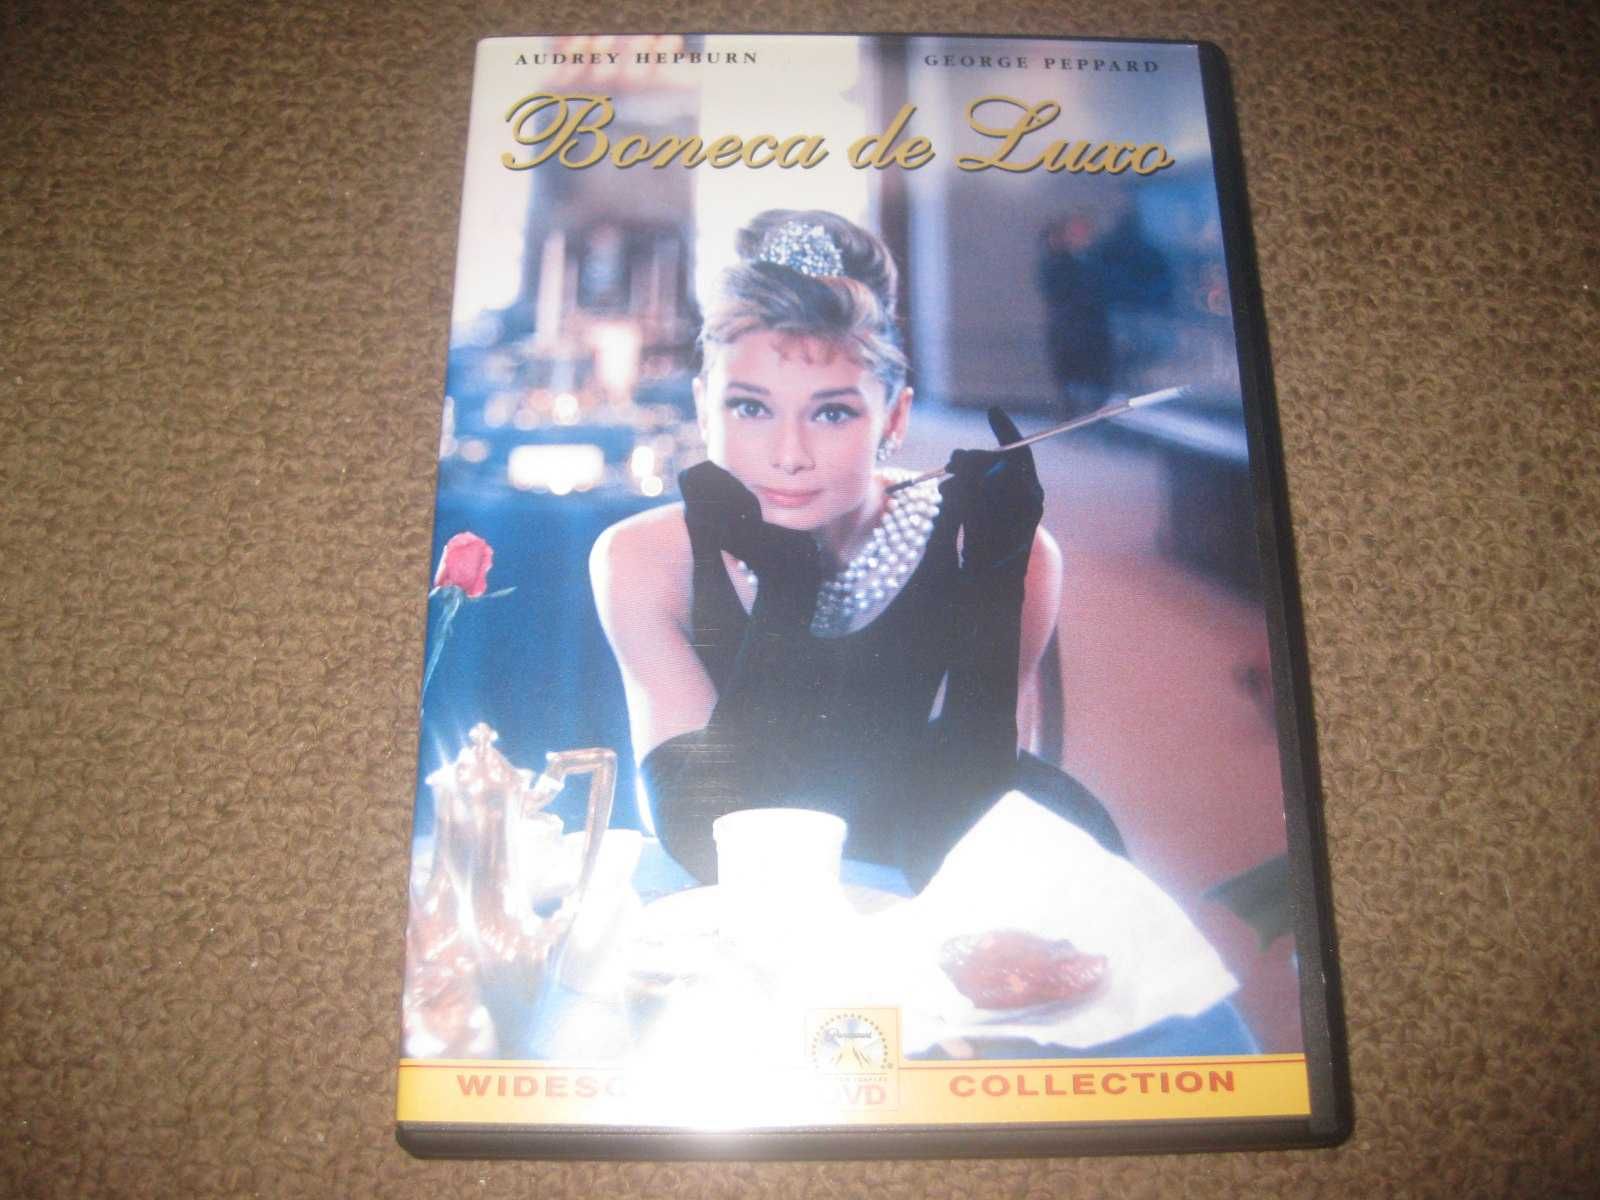 DVD "Boneca de Luxo" com Audrey Hepburn